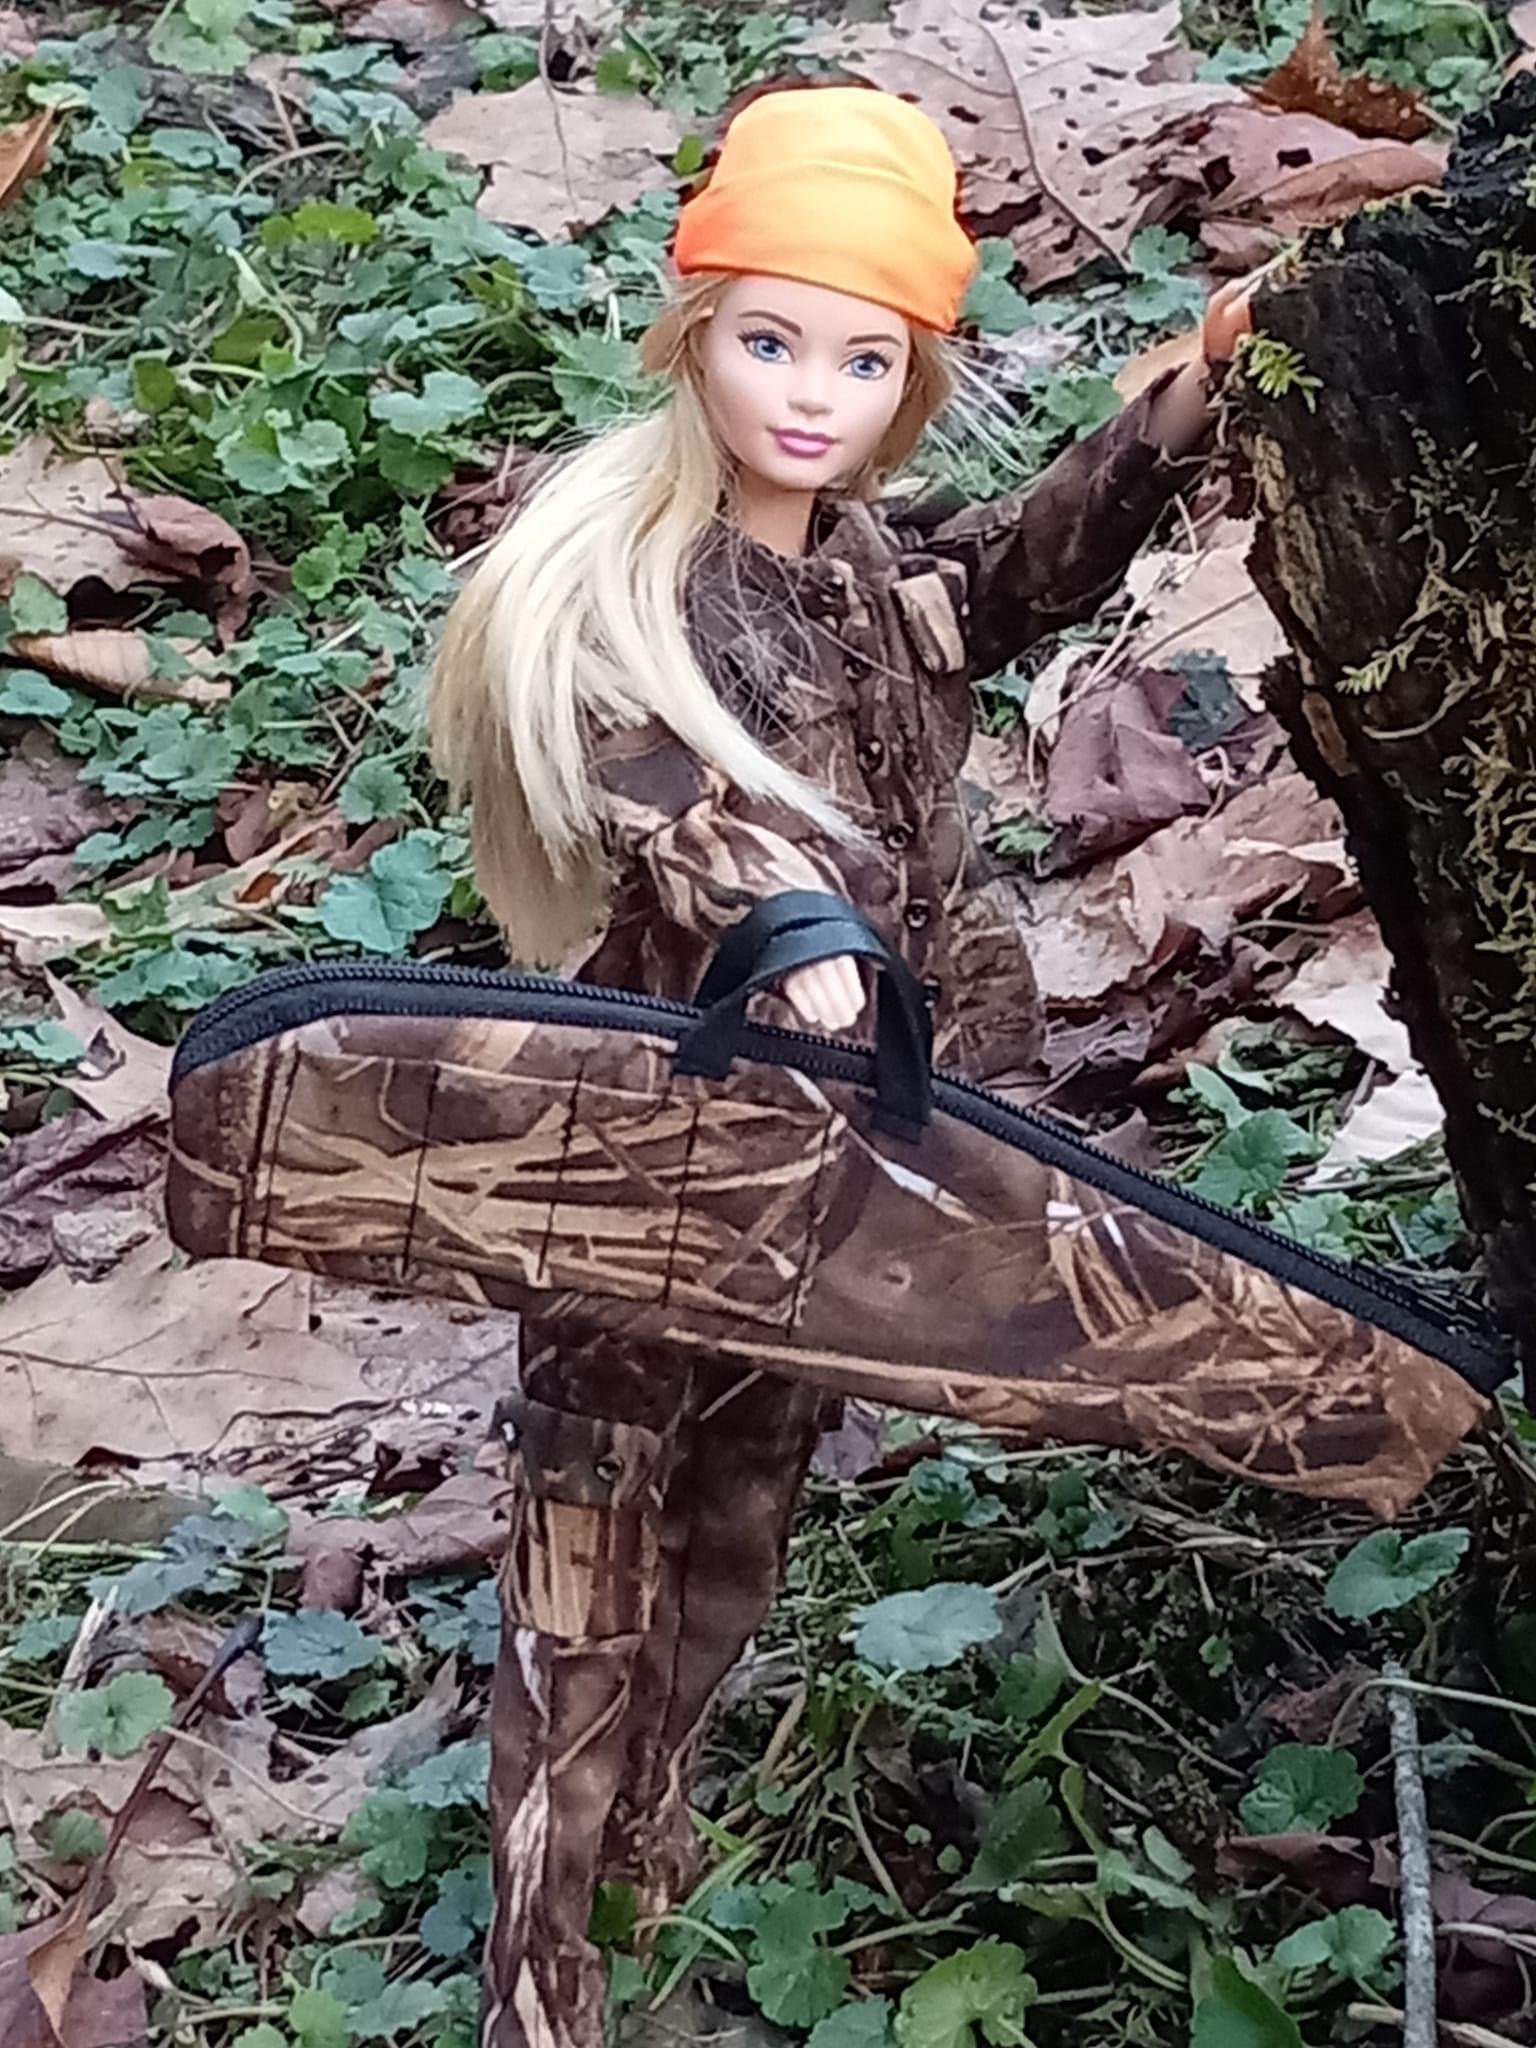 Barbie Sportsman Real Tree Game Deer Season Hunting doll Not